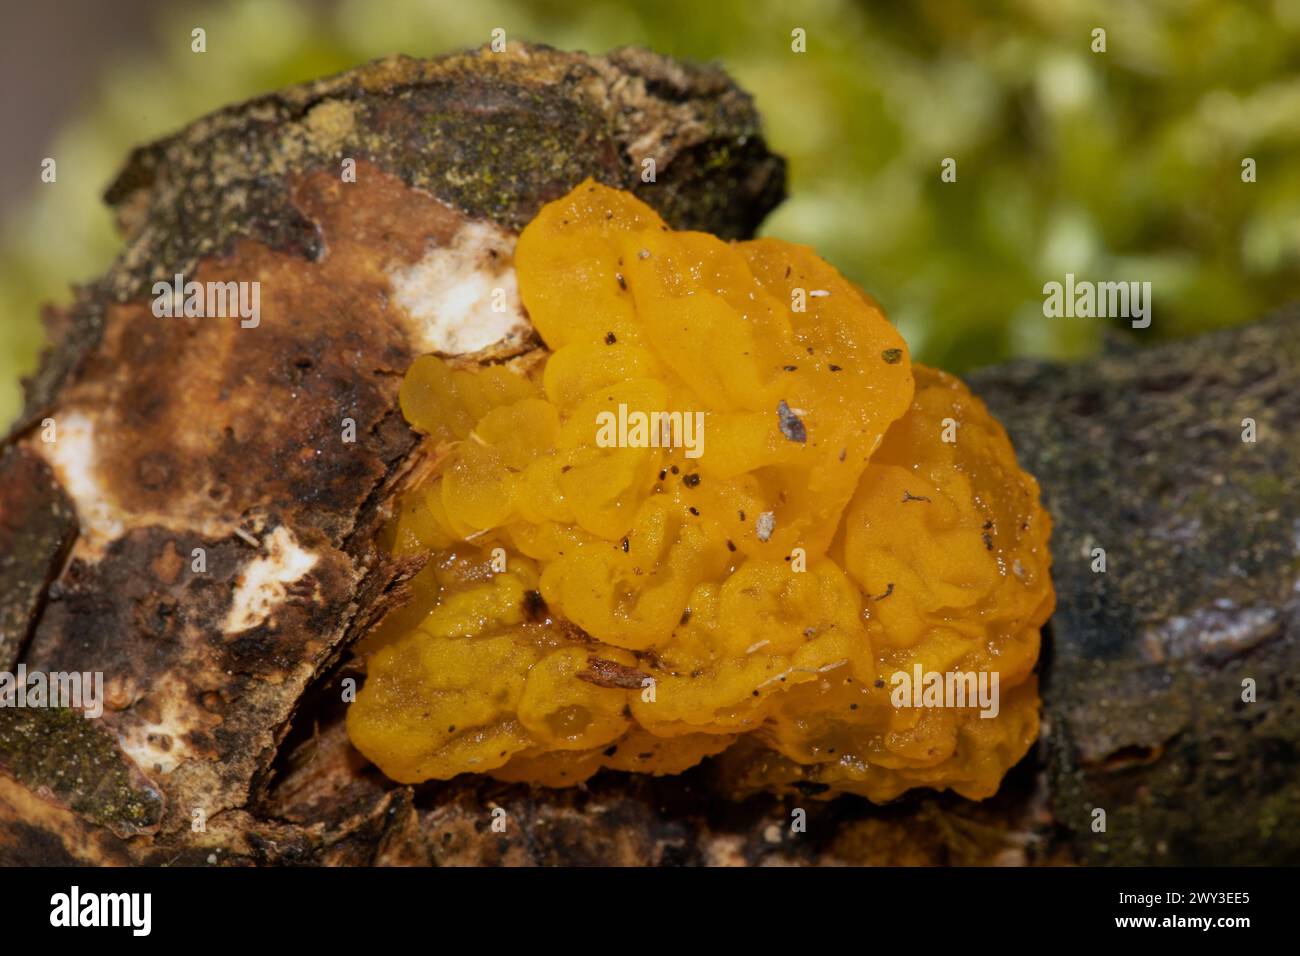 Giallo dorato tremante giallastro gelatinoso corpo fruttifero sul tronco dell'albero Foto Stock